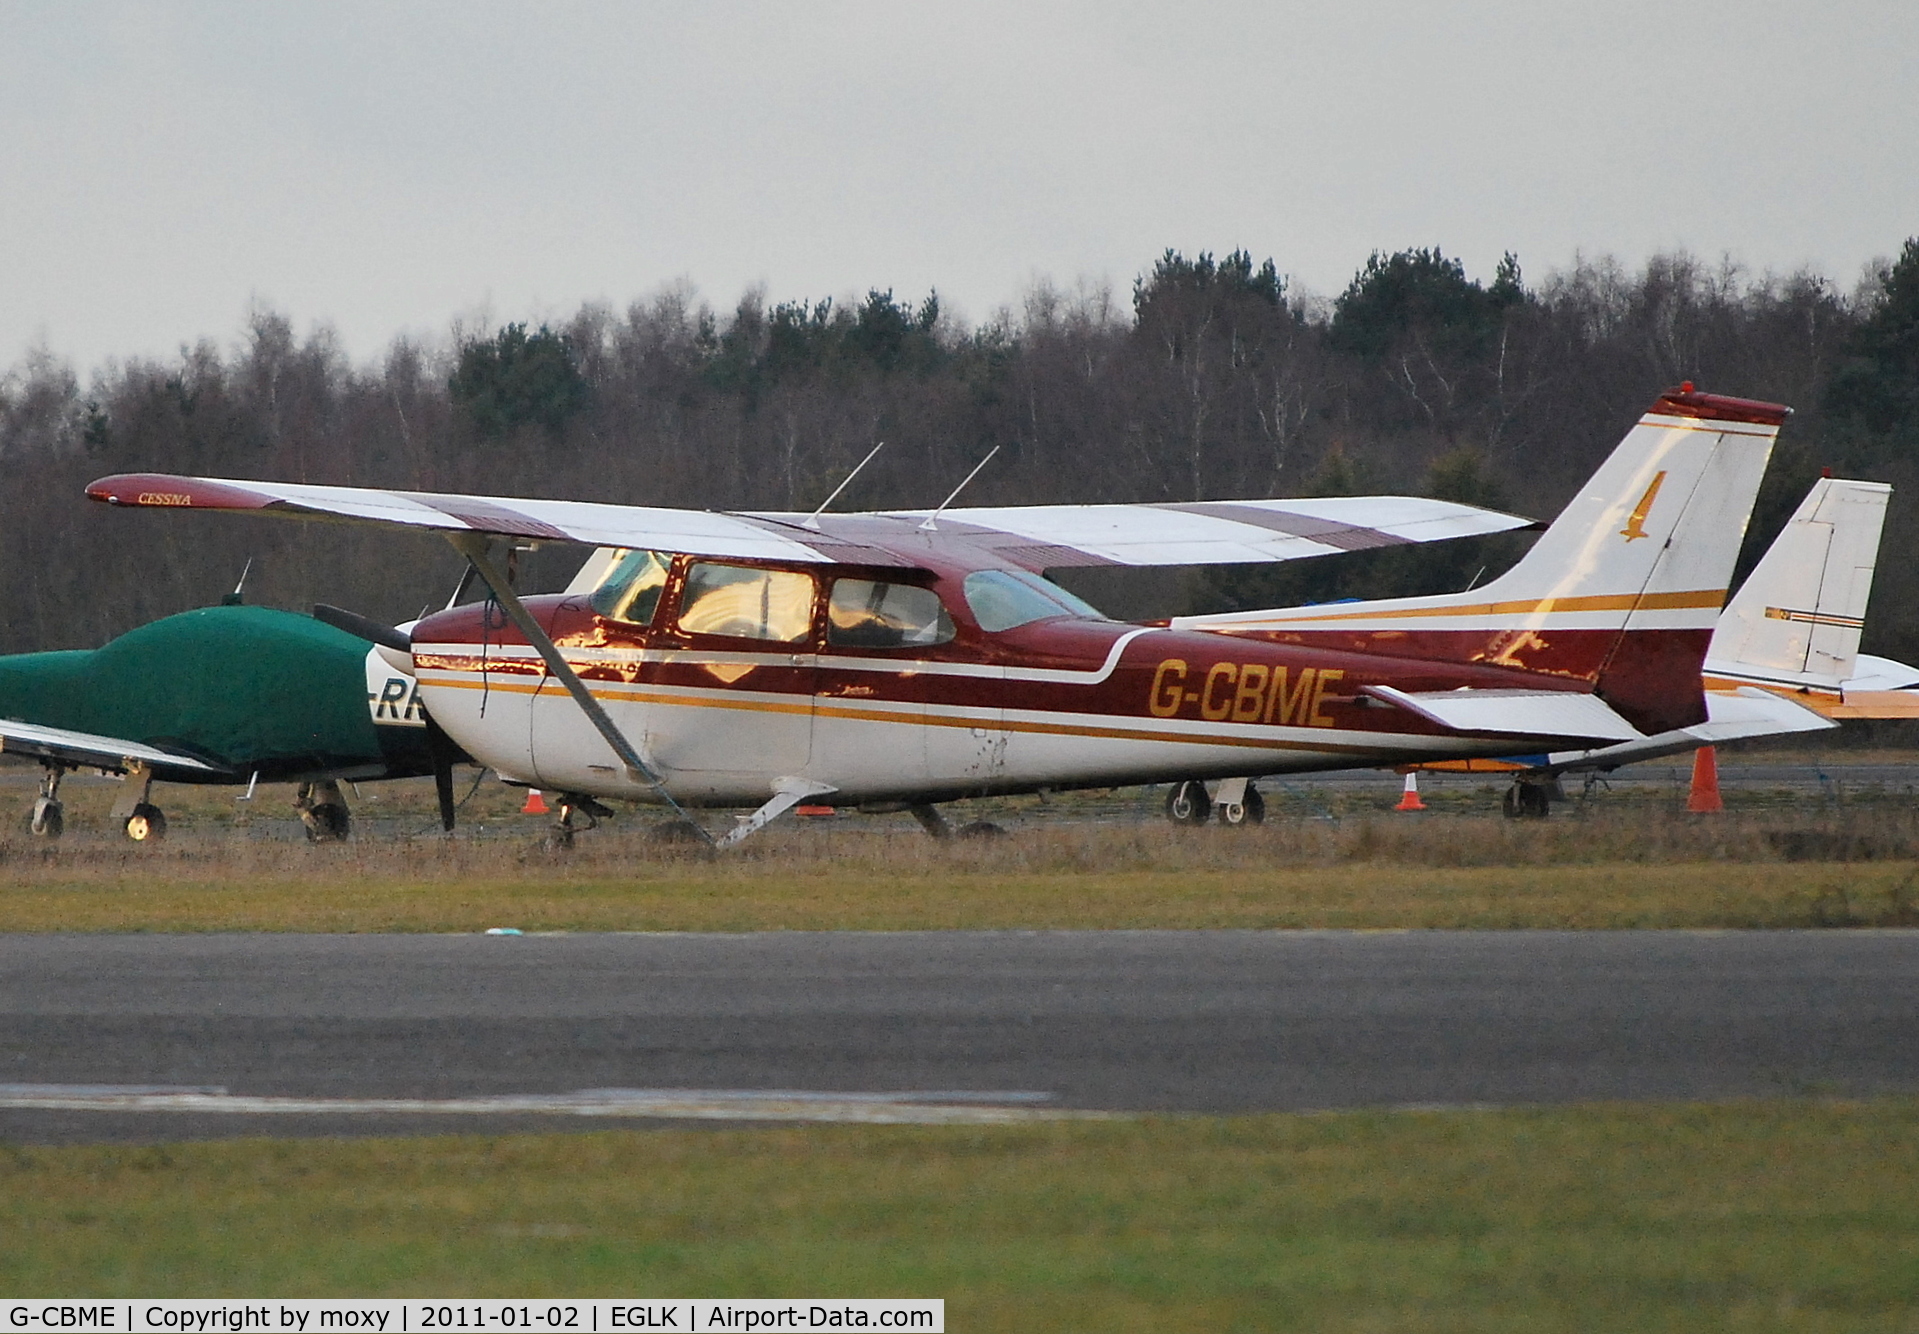 G-CBME, 1973 Reims F172M Skyhawk Skyhawk C/N 1060, Reims Cessna F172M Skyhawk Ex TF-FTV at Blackbushe.